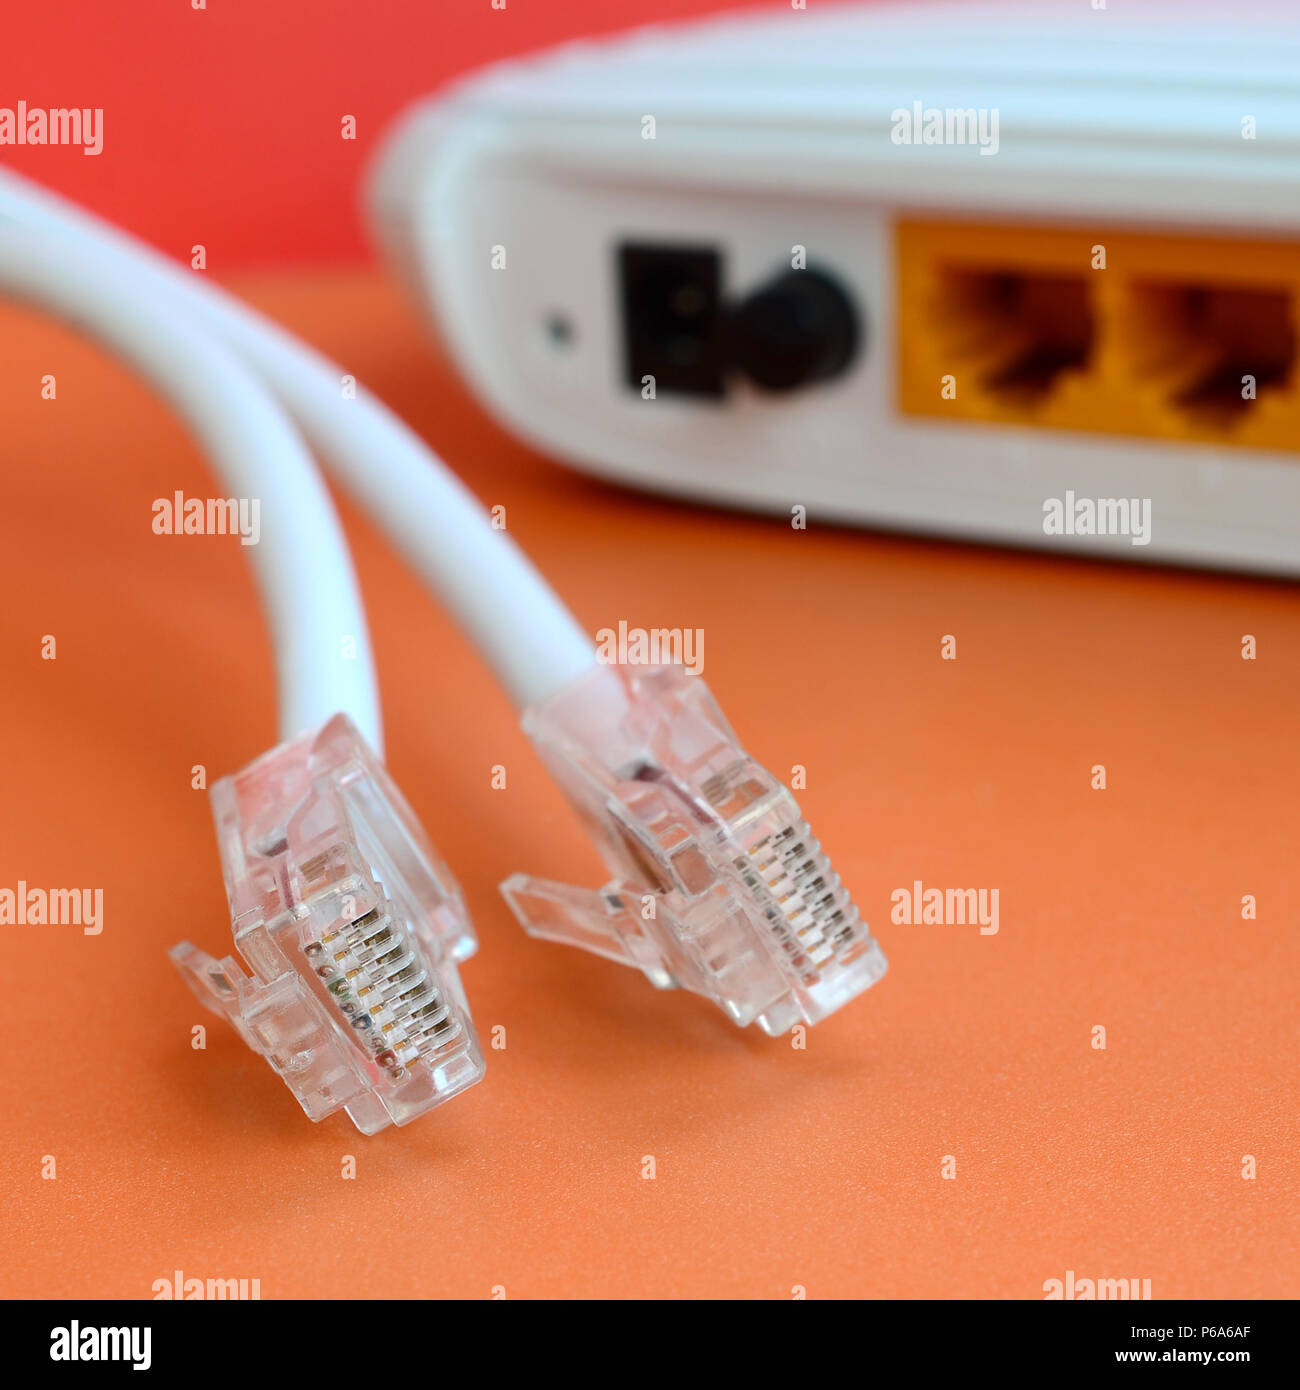 Internet Router und Internet Kabel Stecker liegen auf einem hellen orange  hinterlegt. Elemente für Internetverbindung erforderlich Stockfotografie -  Alamy